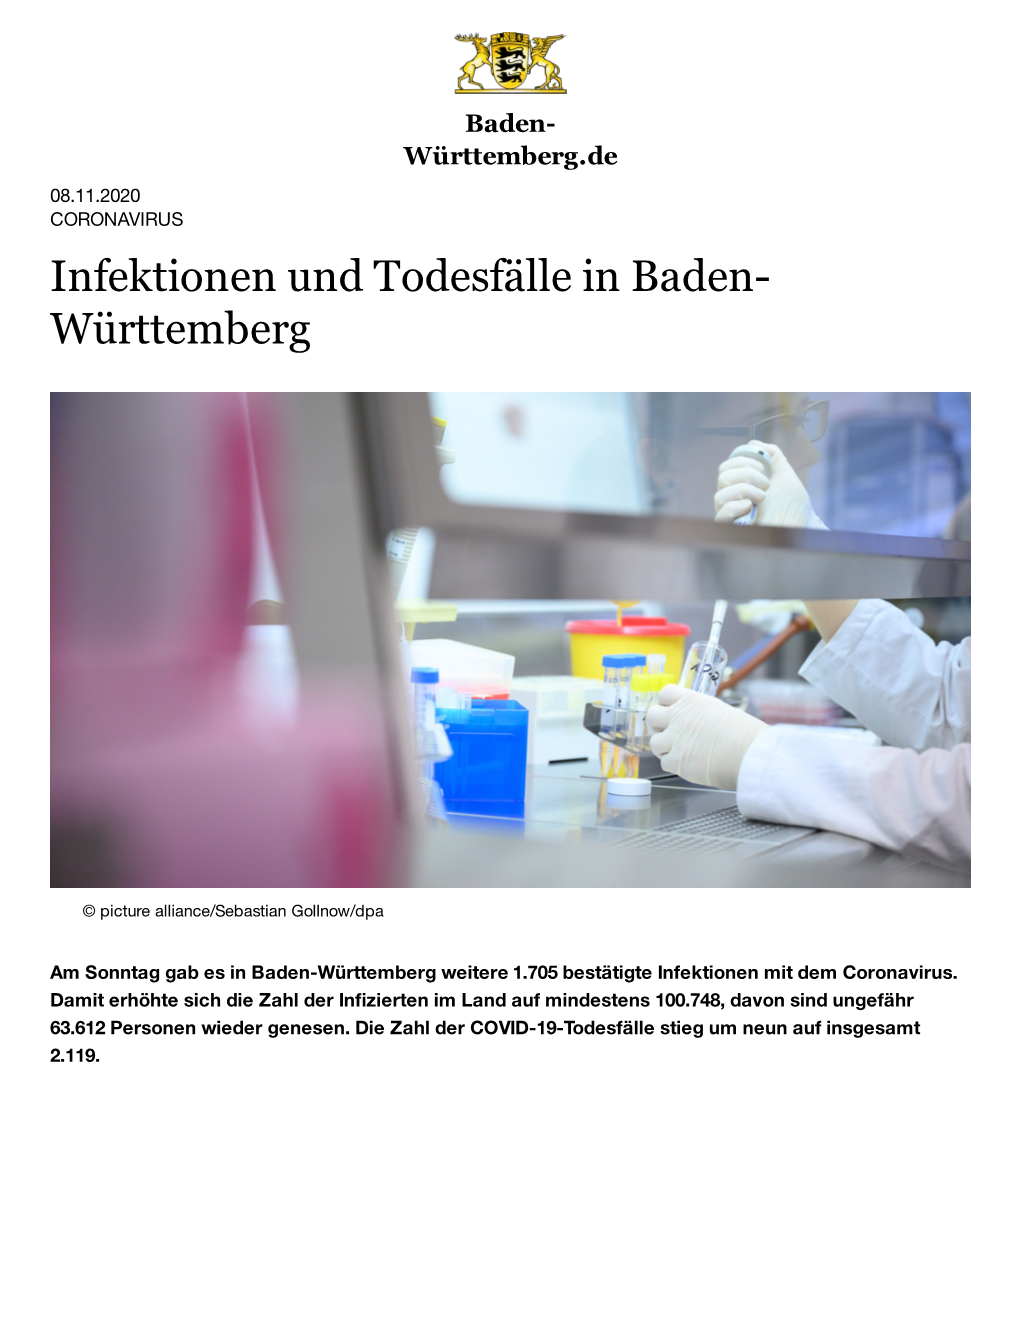 Infektionen Und Todesfälle in Baden-Württemberg